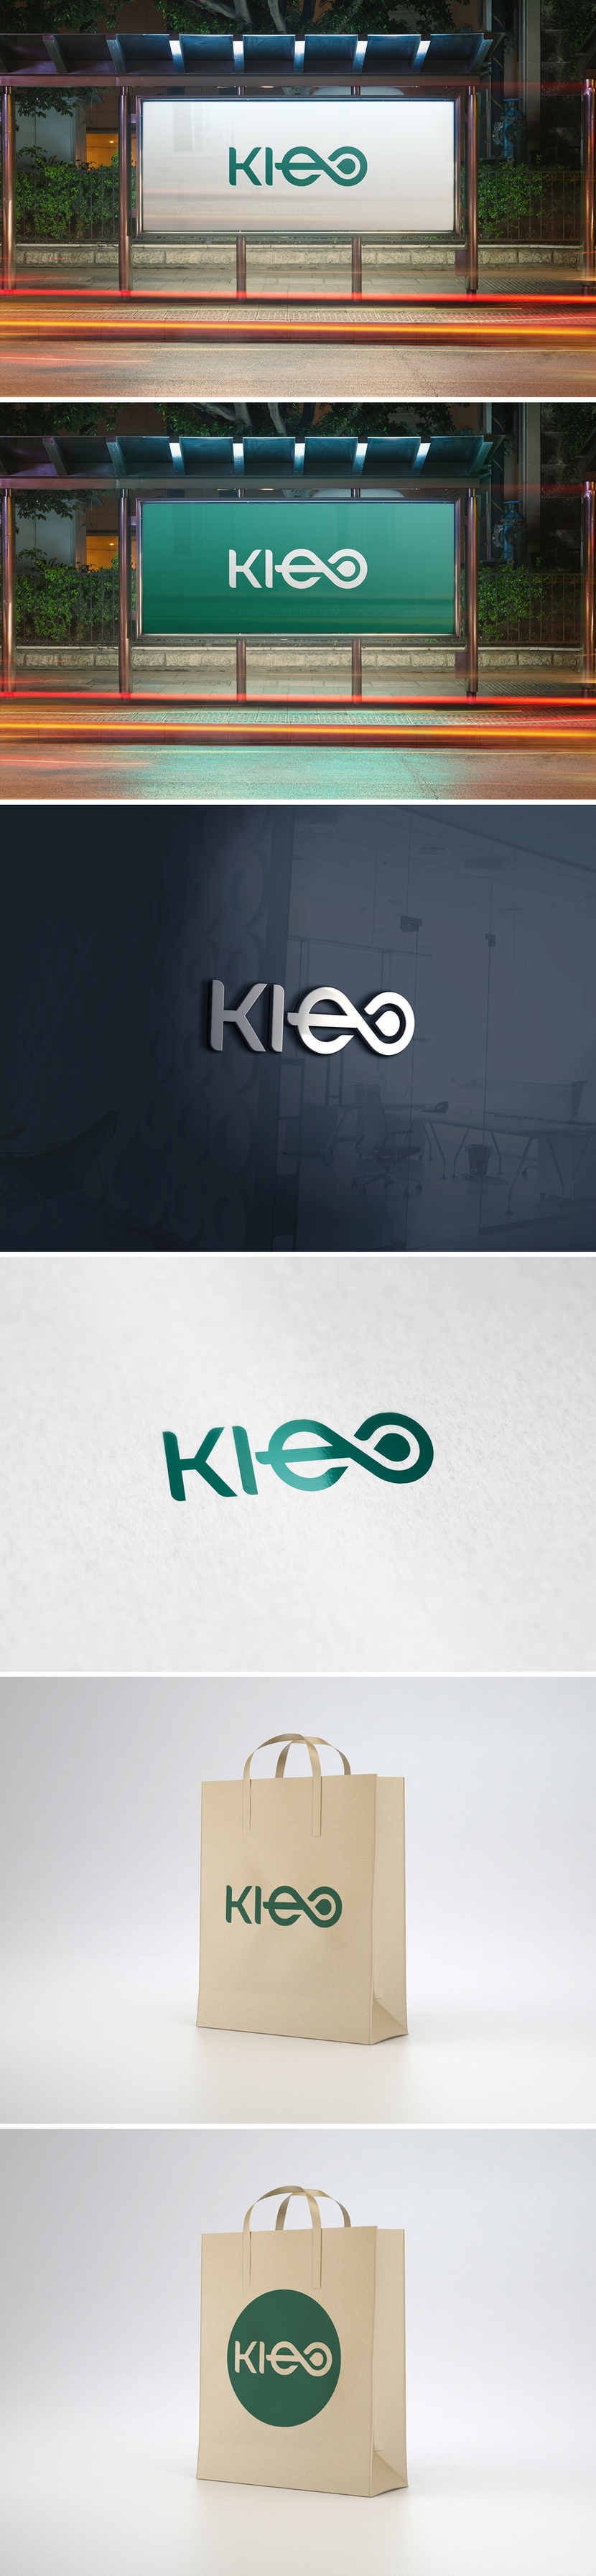 Буква "e" представляет собой намек на лист растения (экологичность). При этом буква "e" соединяясь с буквой "o" в форме капли(косметическое средство) образуют символ бесконечности, намекая на вечную молодость при использовании косметики "KLEO" - Логотип и фирменный стиль для оптовика органических товаров для семьи и дома